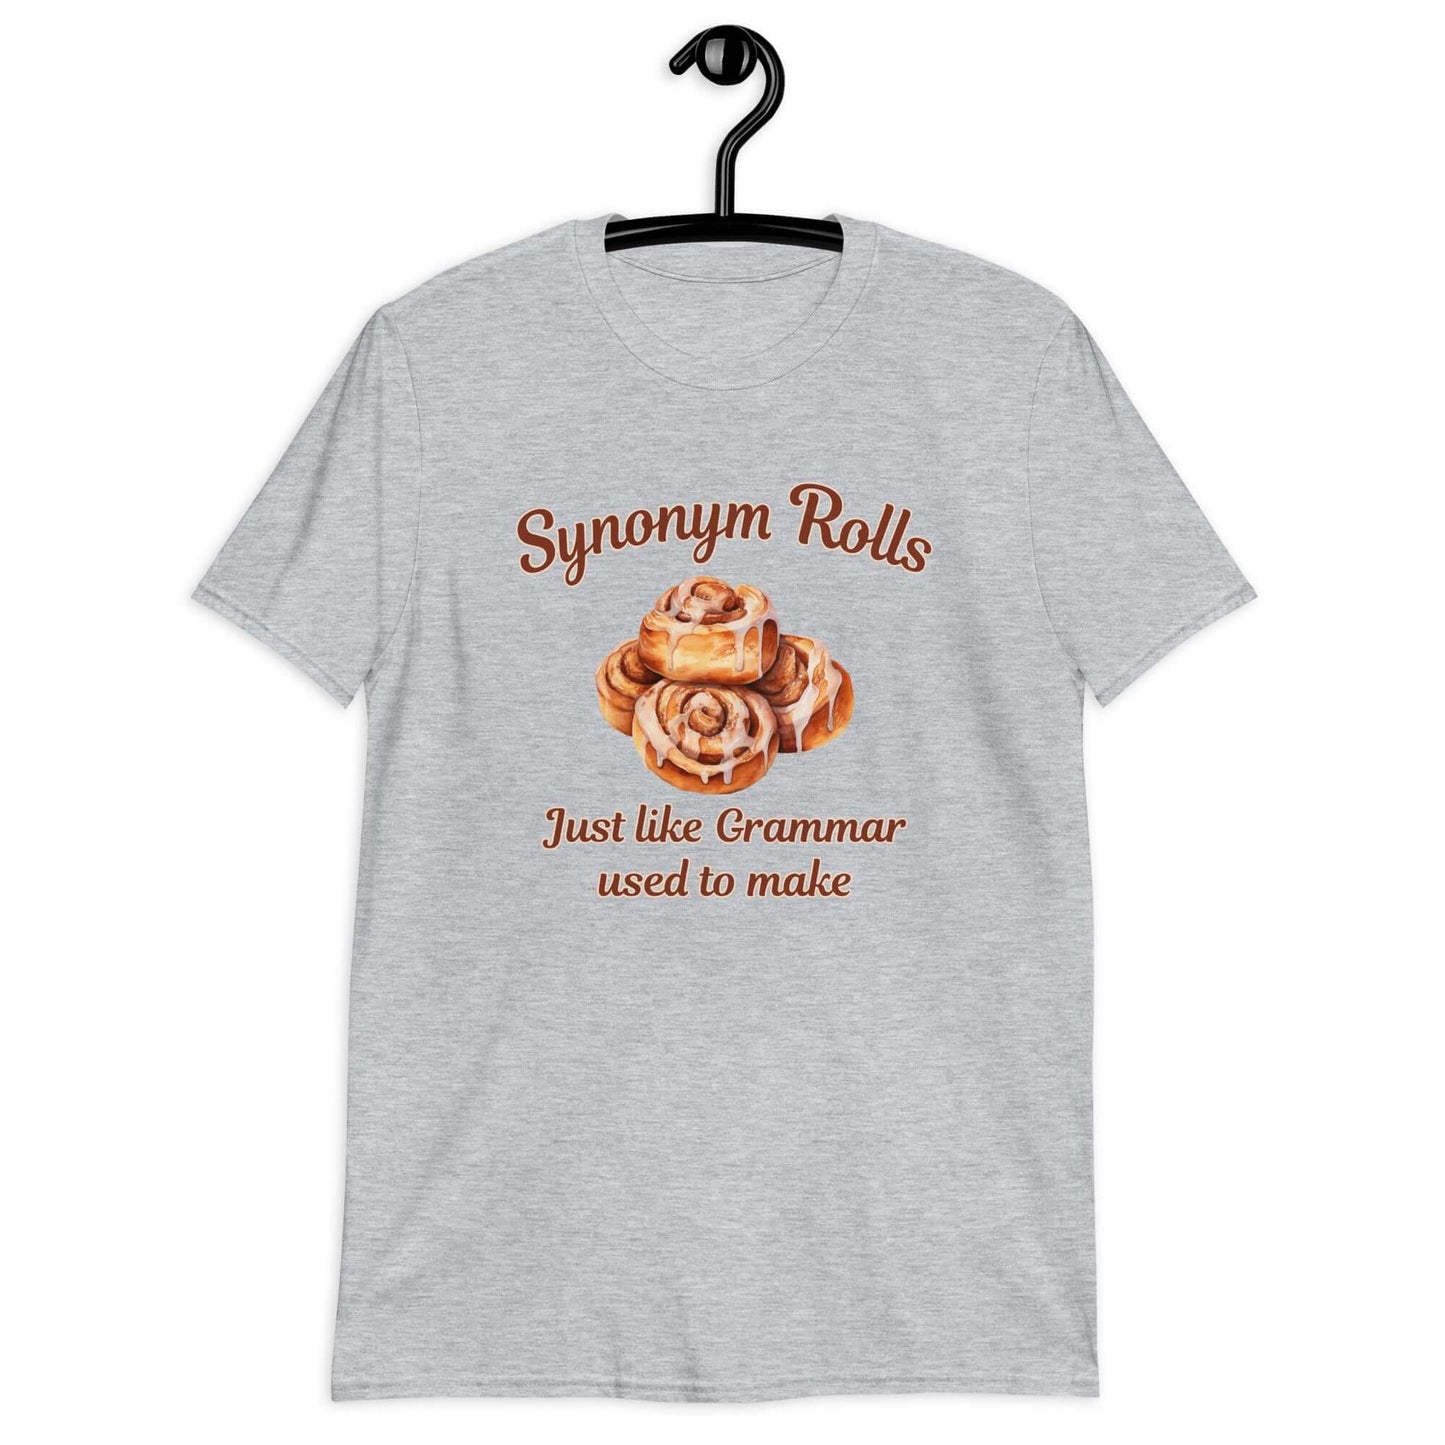 Cinnamon synonym rolls gramma grammar funny t-shirt